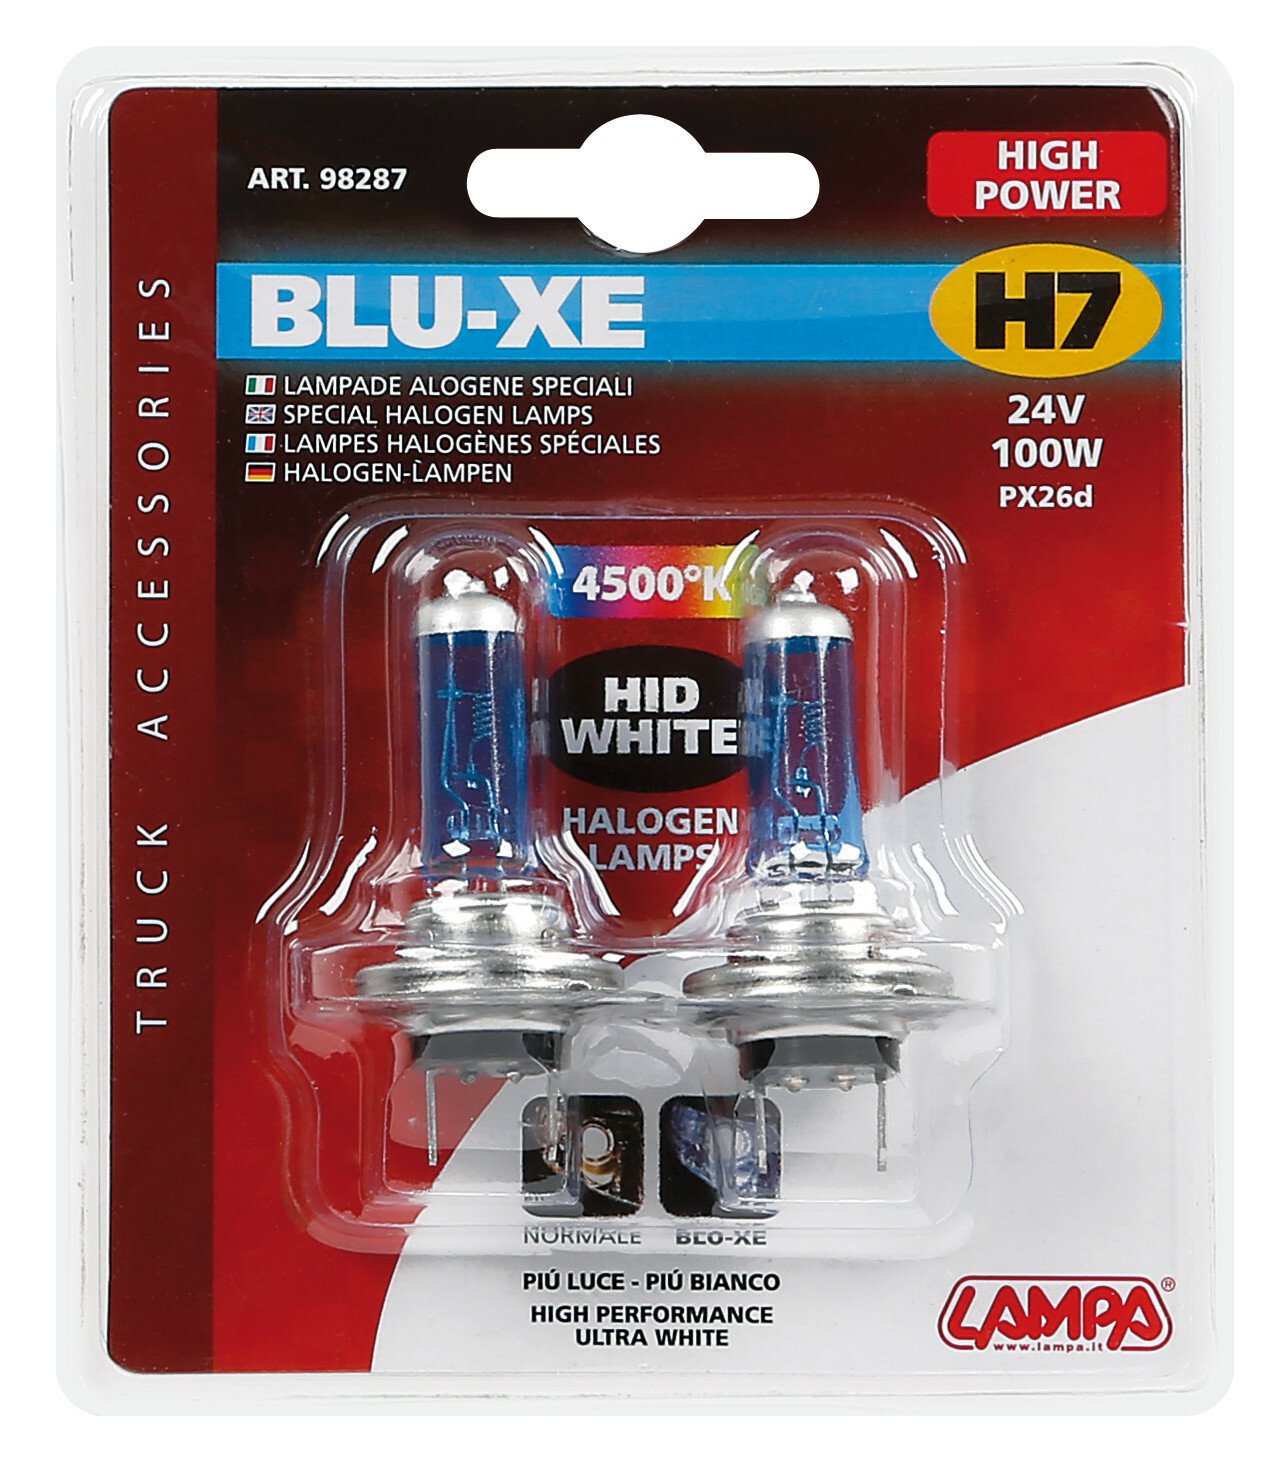 Blu-Xe halogén H7 - es égő PX26d 24V-os 100w-os - 2 darab thumb